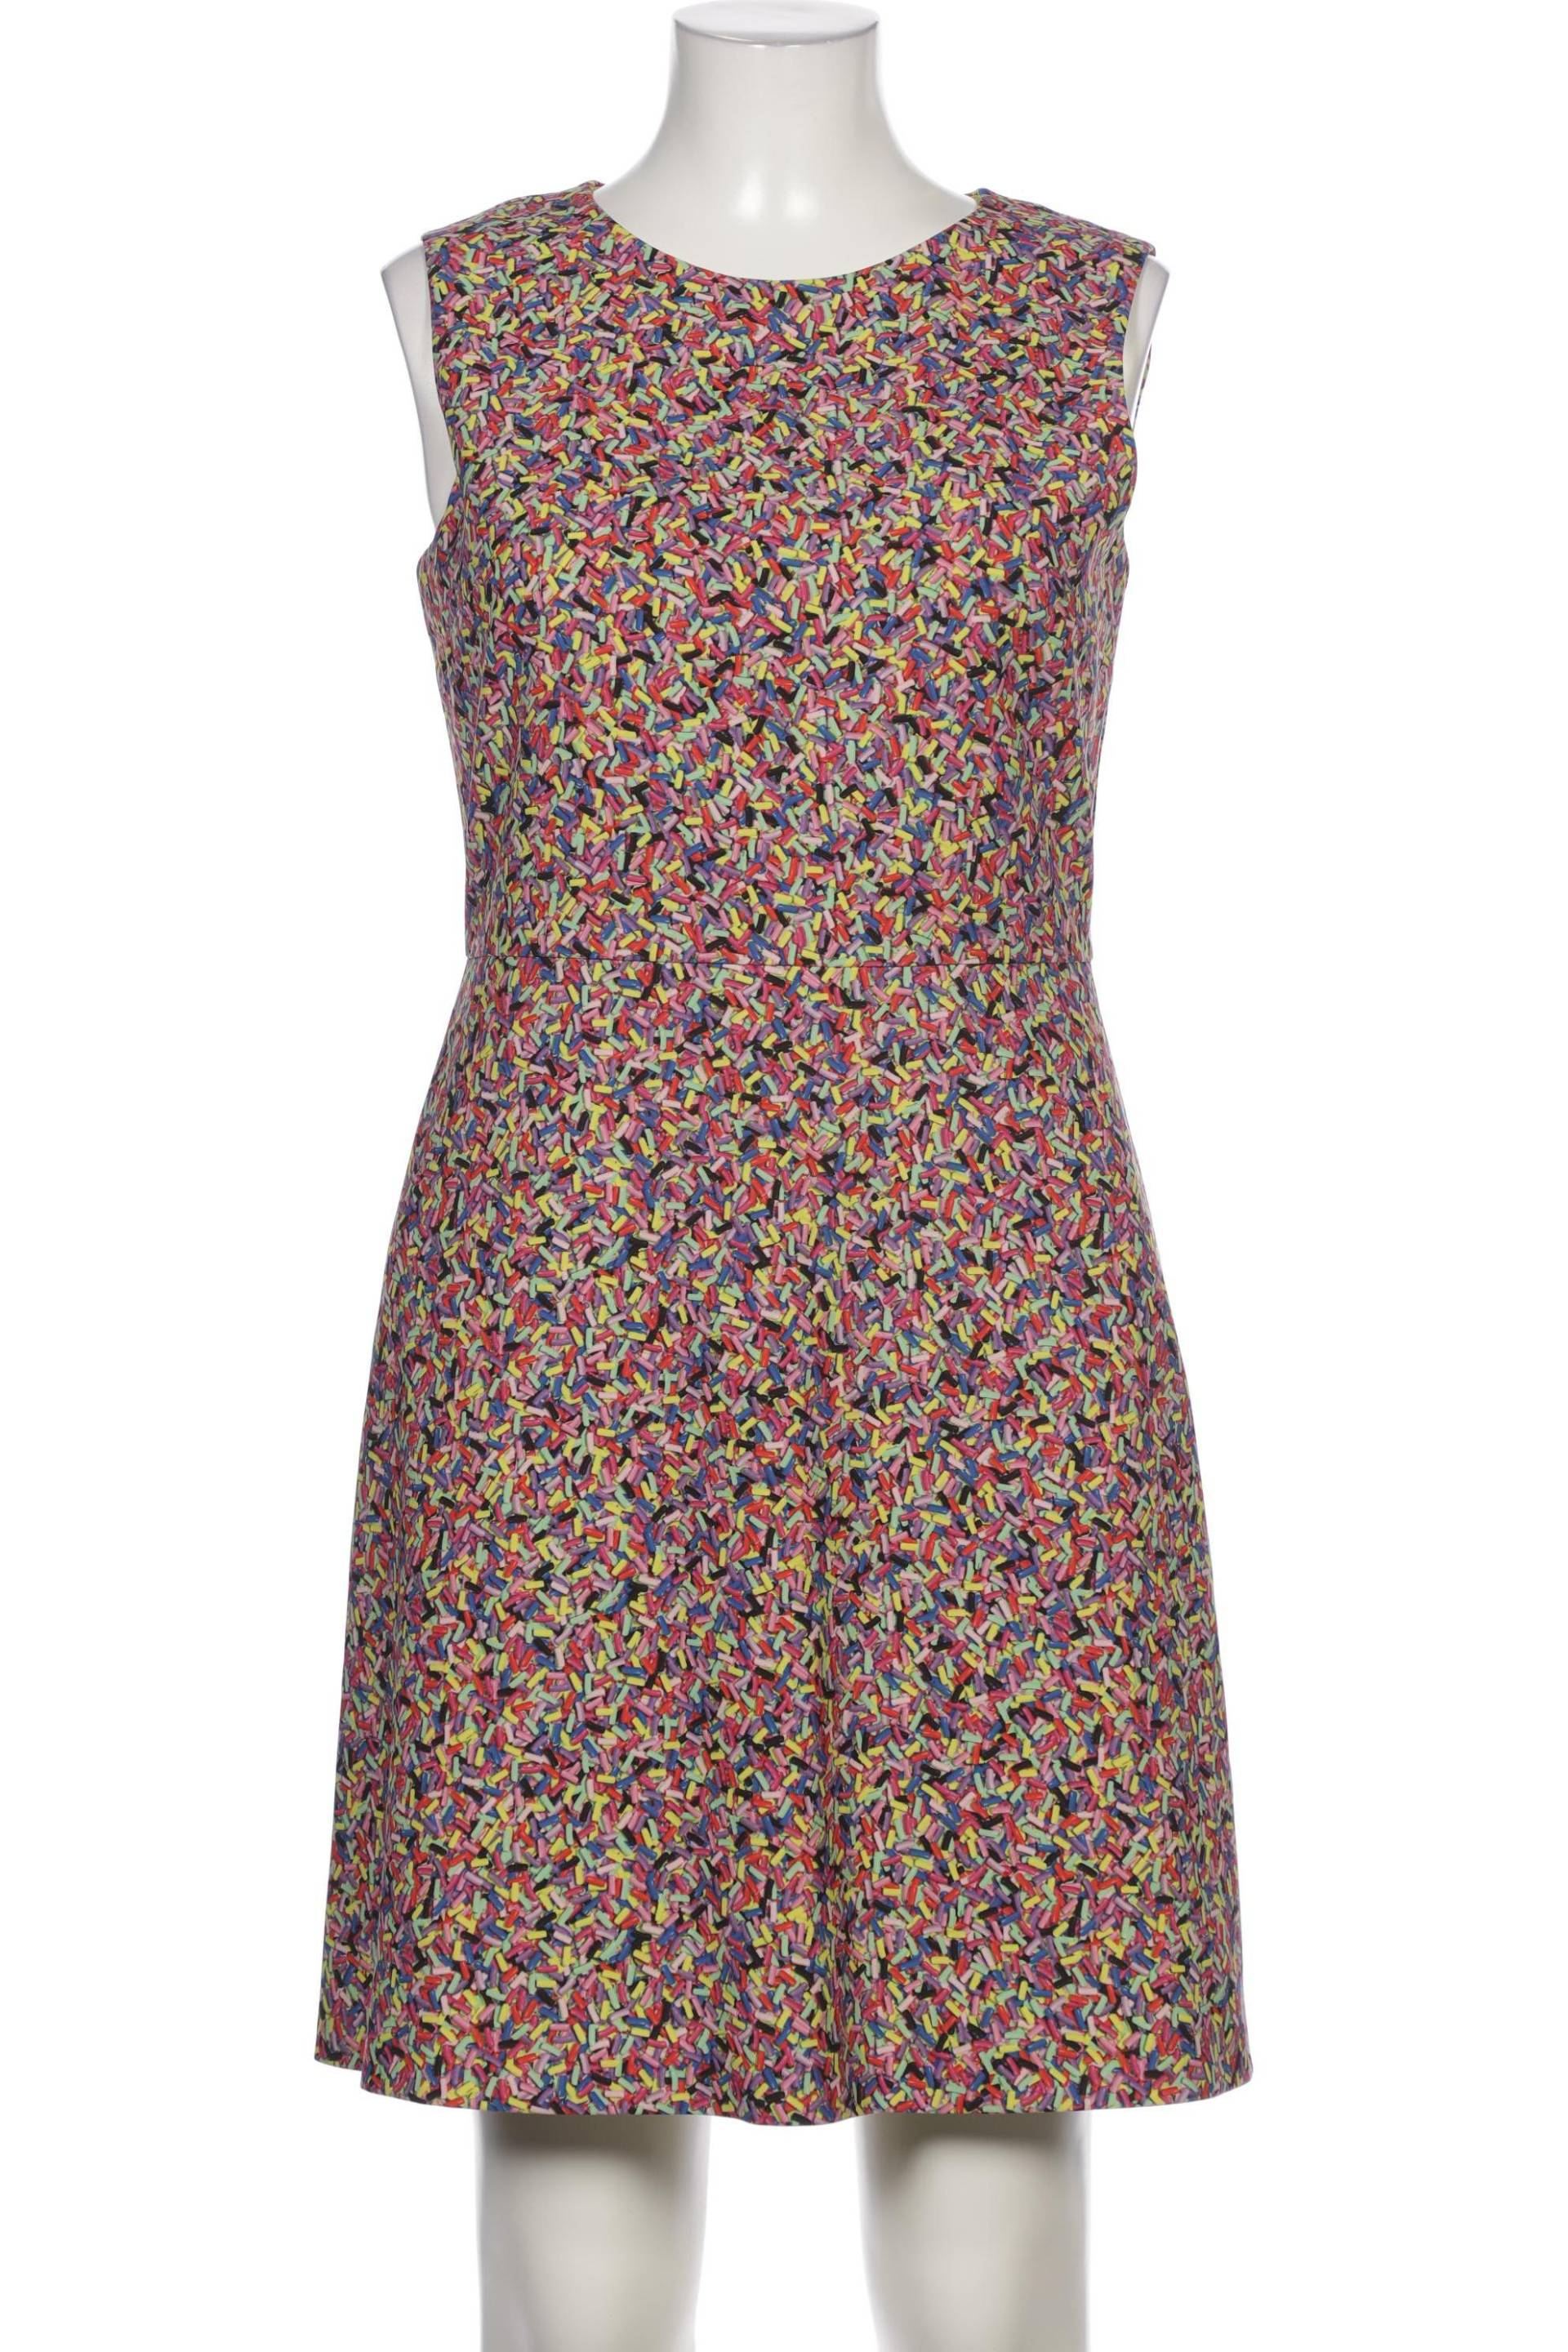 Moschino Damen Kleid, mehrfarbig, Gr. 42 von Moschino